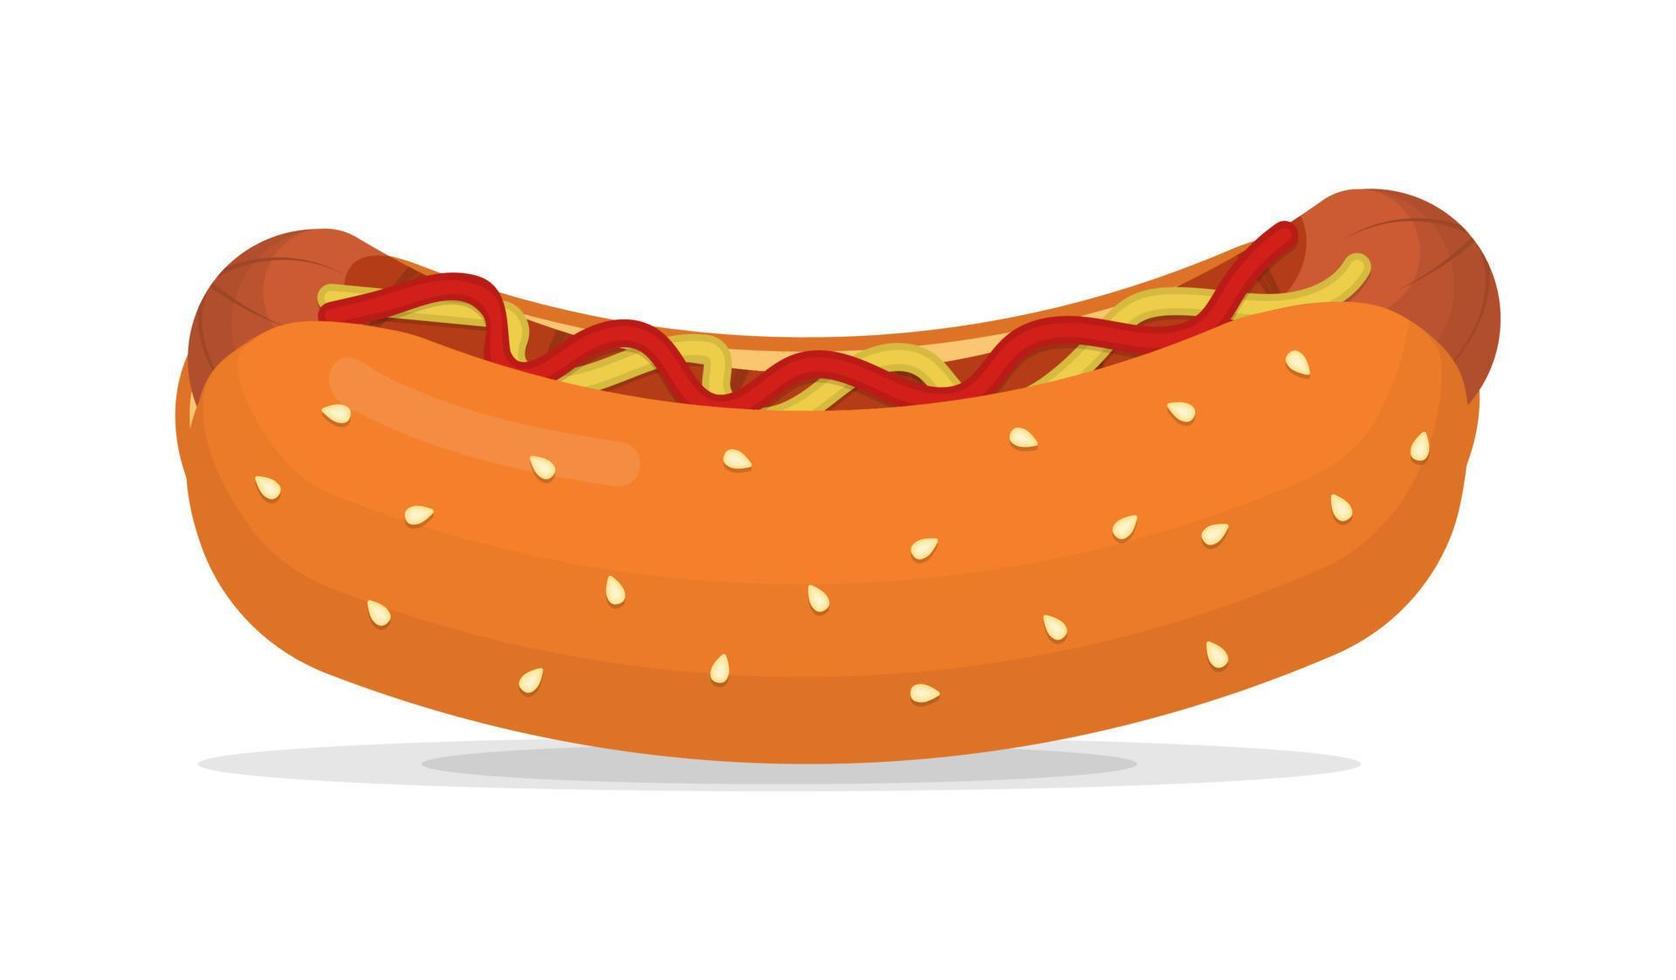 klassischer hotdog mit wurst-, ketchup- und senfflacher illustration vektor